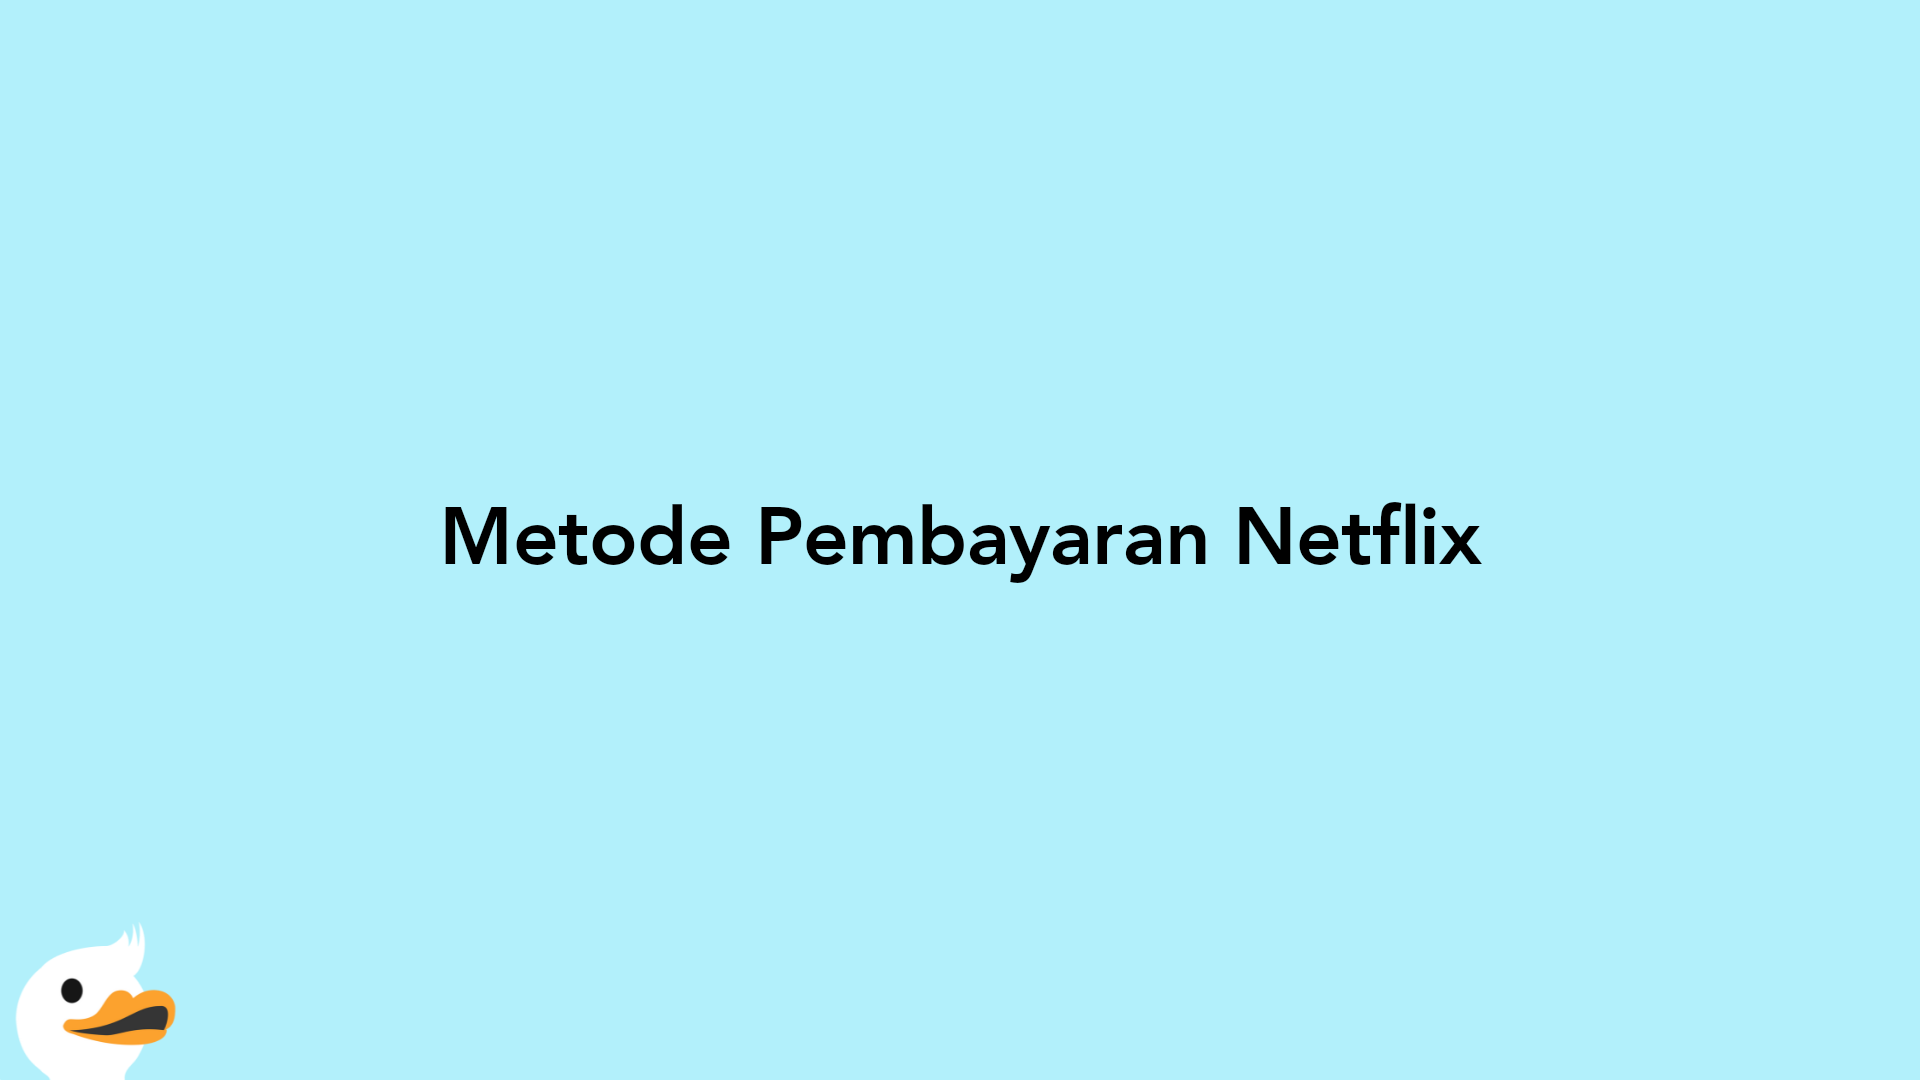 Metode Pembayaran Netflix